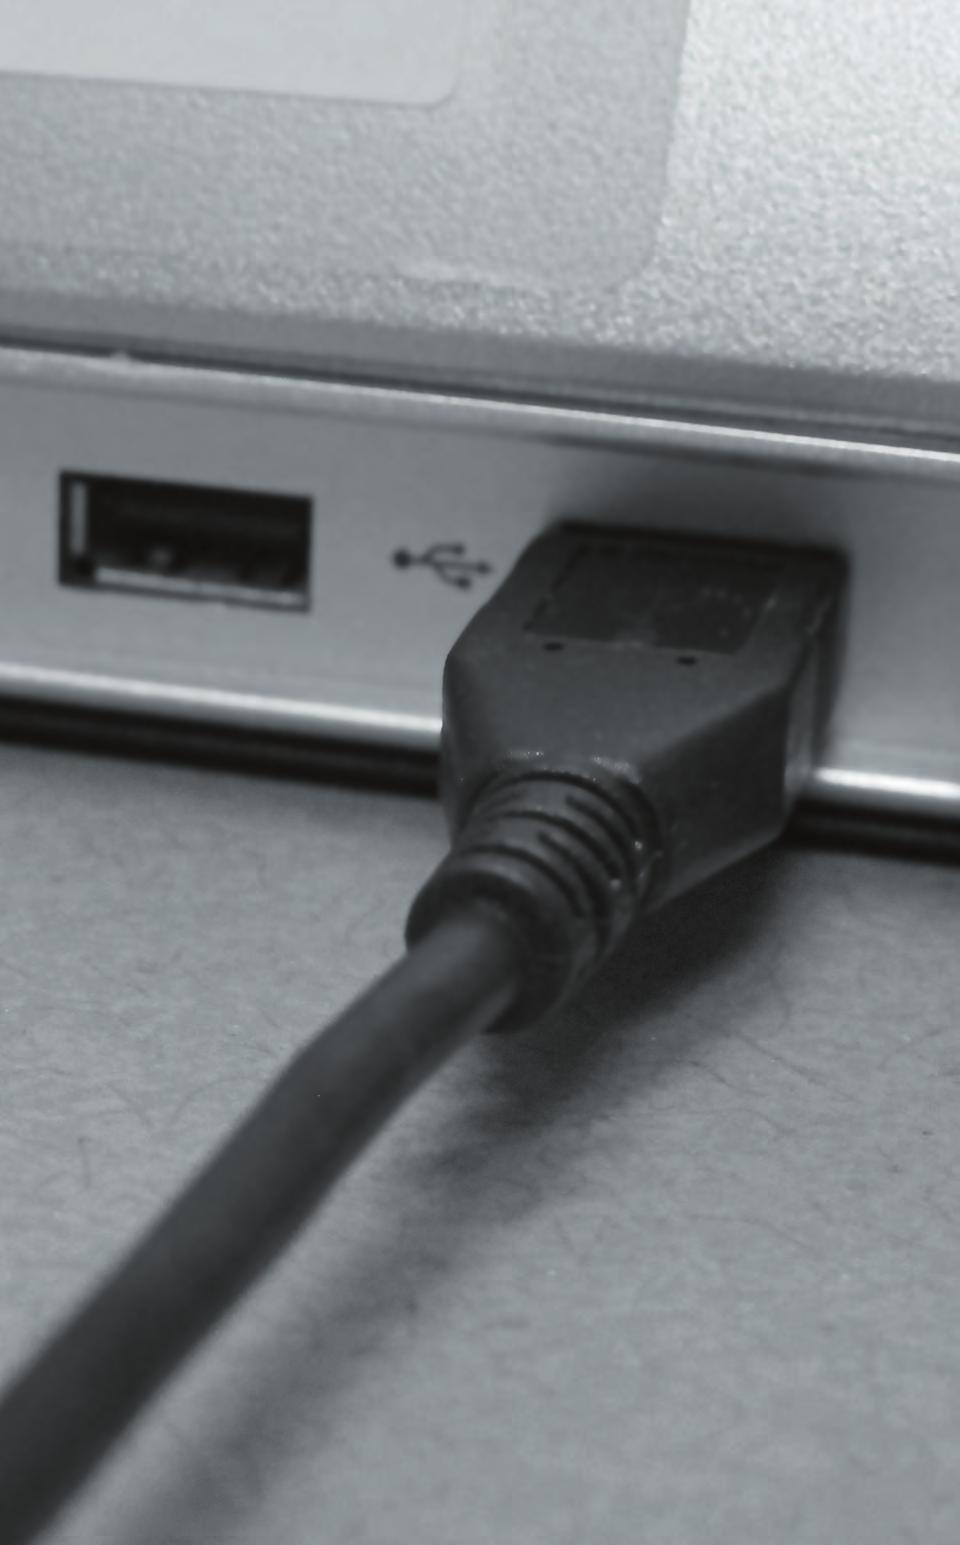 Lade batteriet via en datamaskin 1 2 3 Sett inn den smale enden av USB-kabelen i apparatet. Sett inn den brede enden av USB-kabelen i en tilgjengelig USB-port på PC-en.